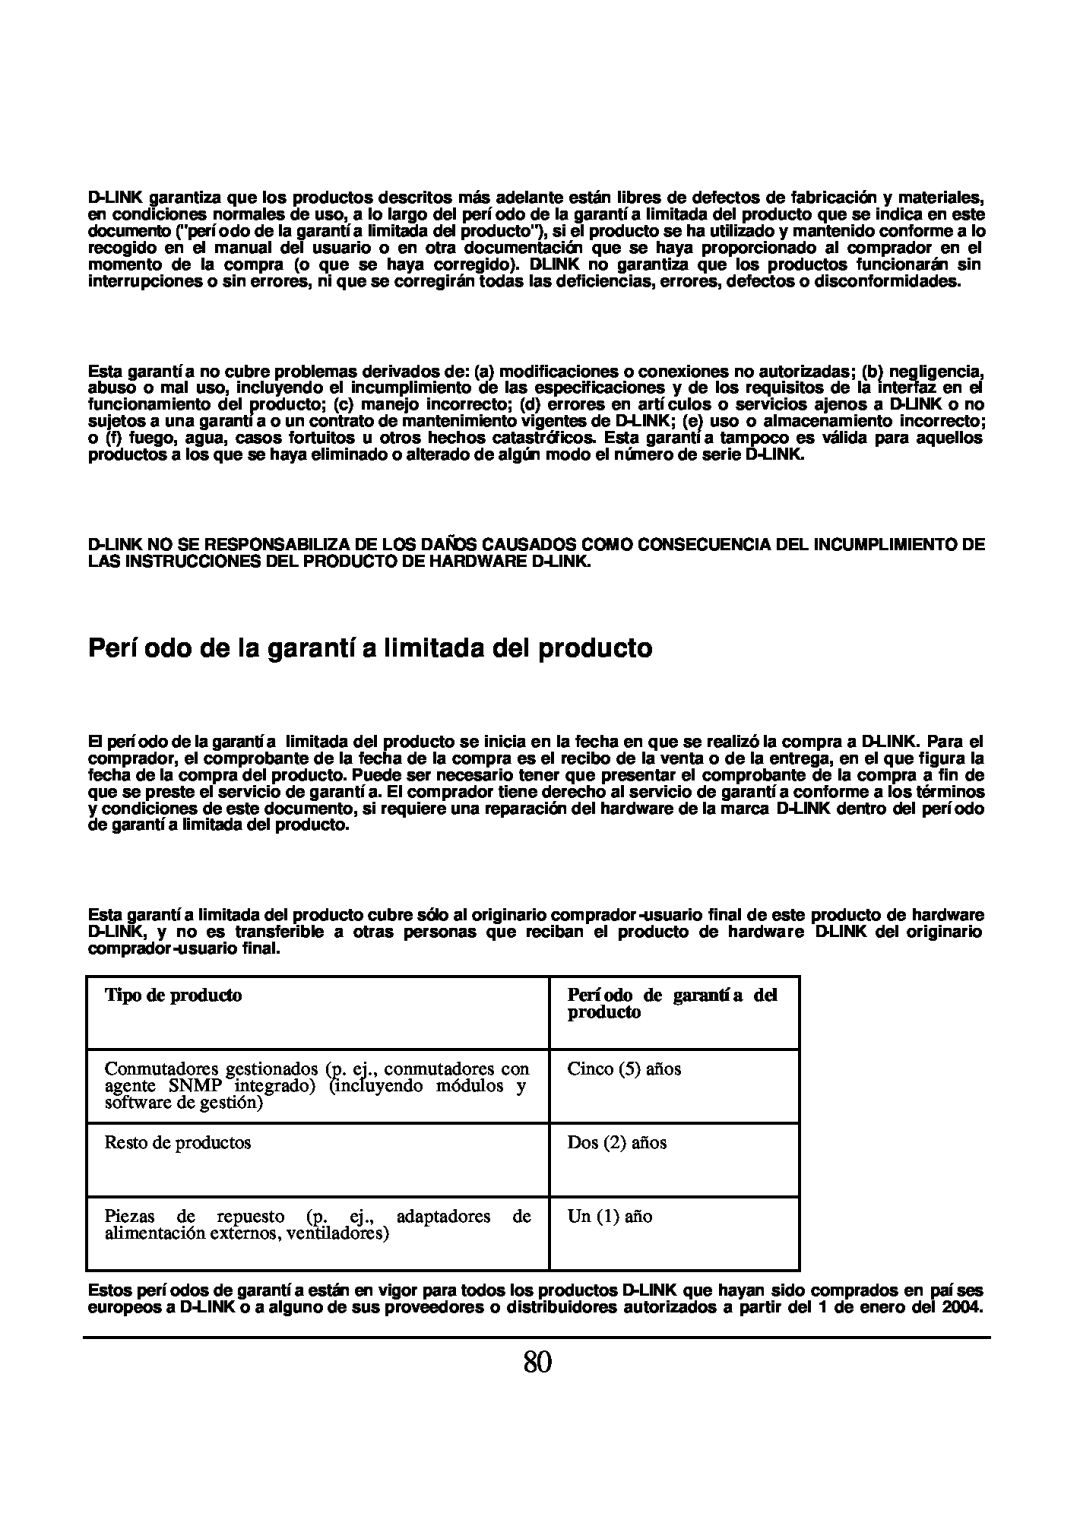 D-Link DES-1526 manual Período de la garantía limitada del producto, Tipo de producto, Período de garantía del 